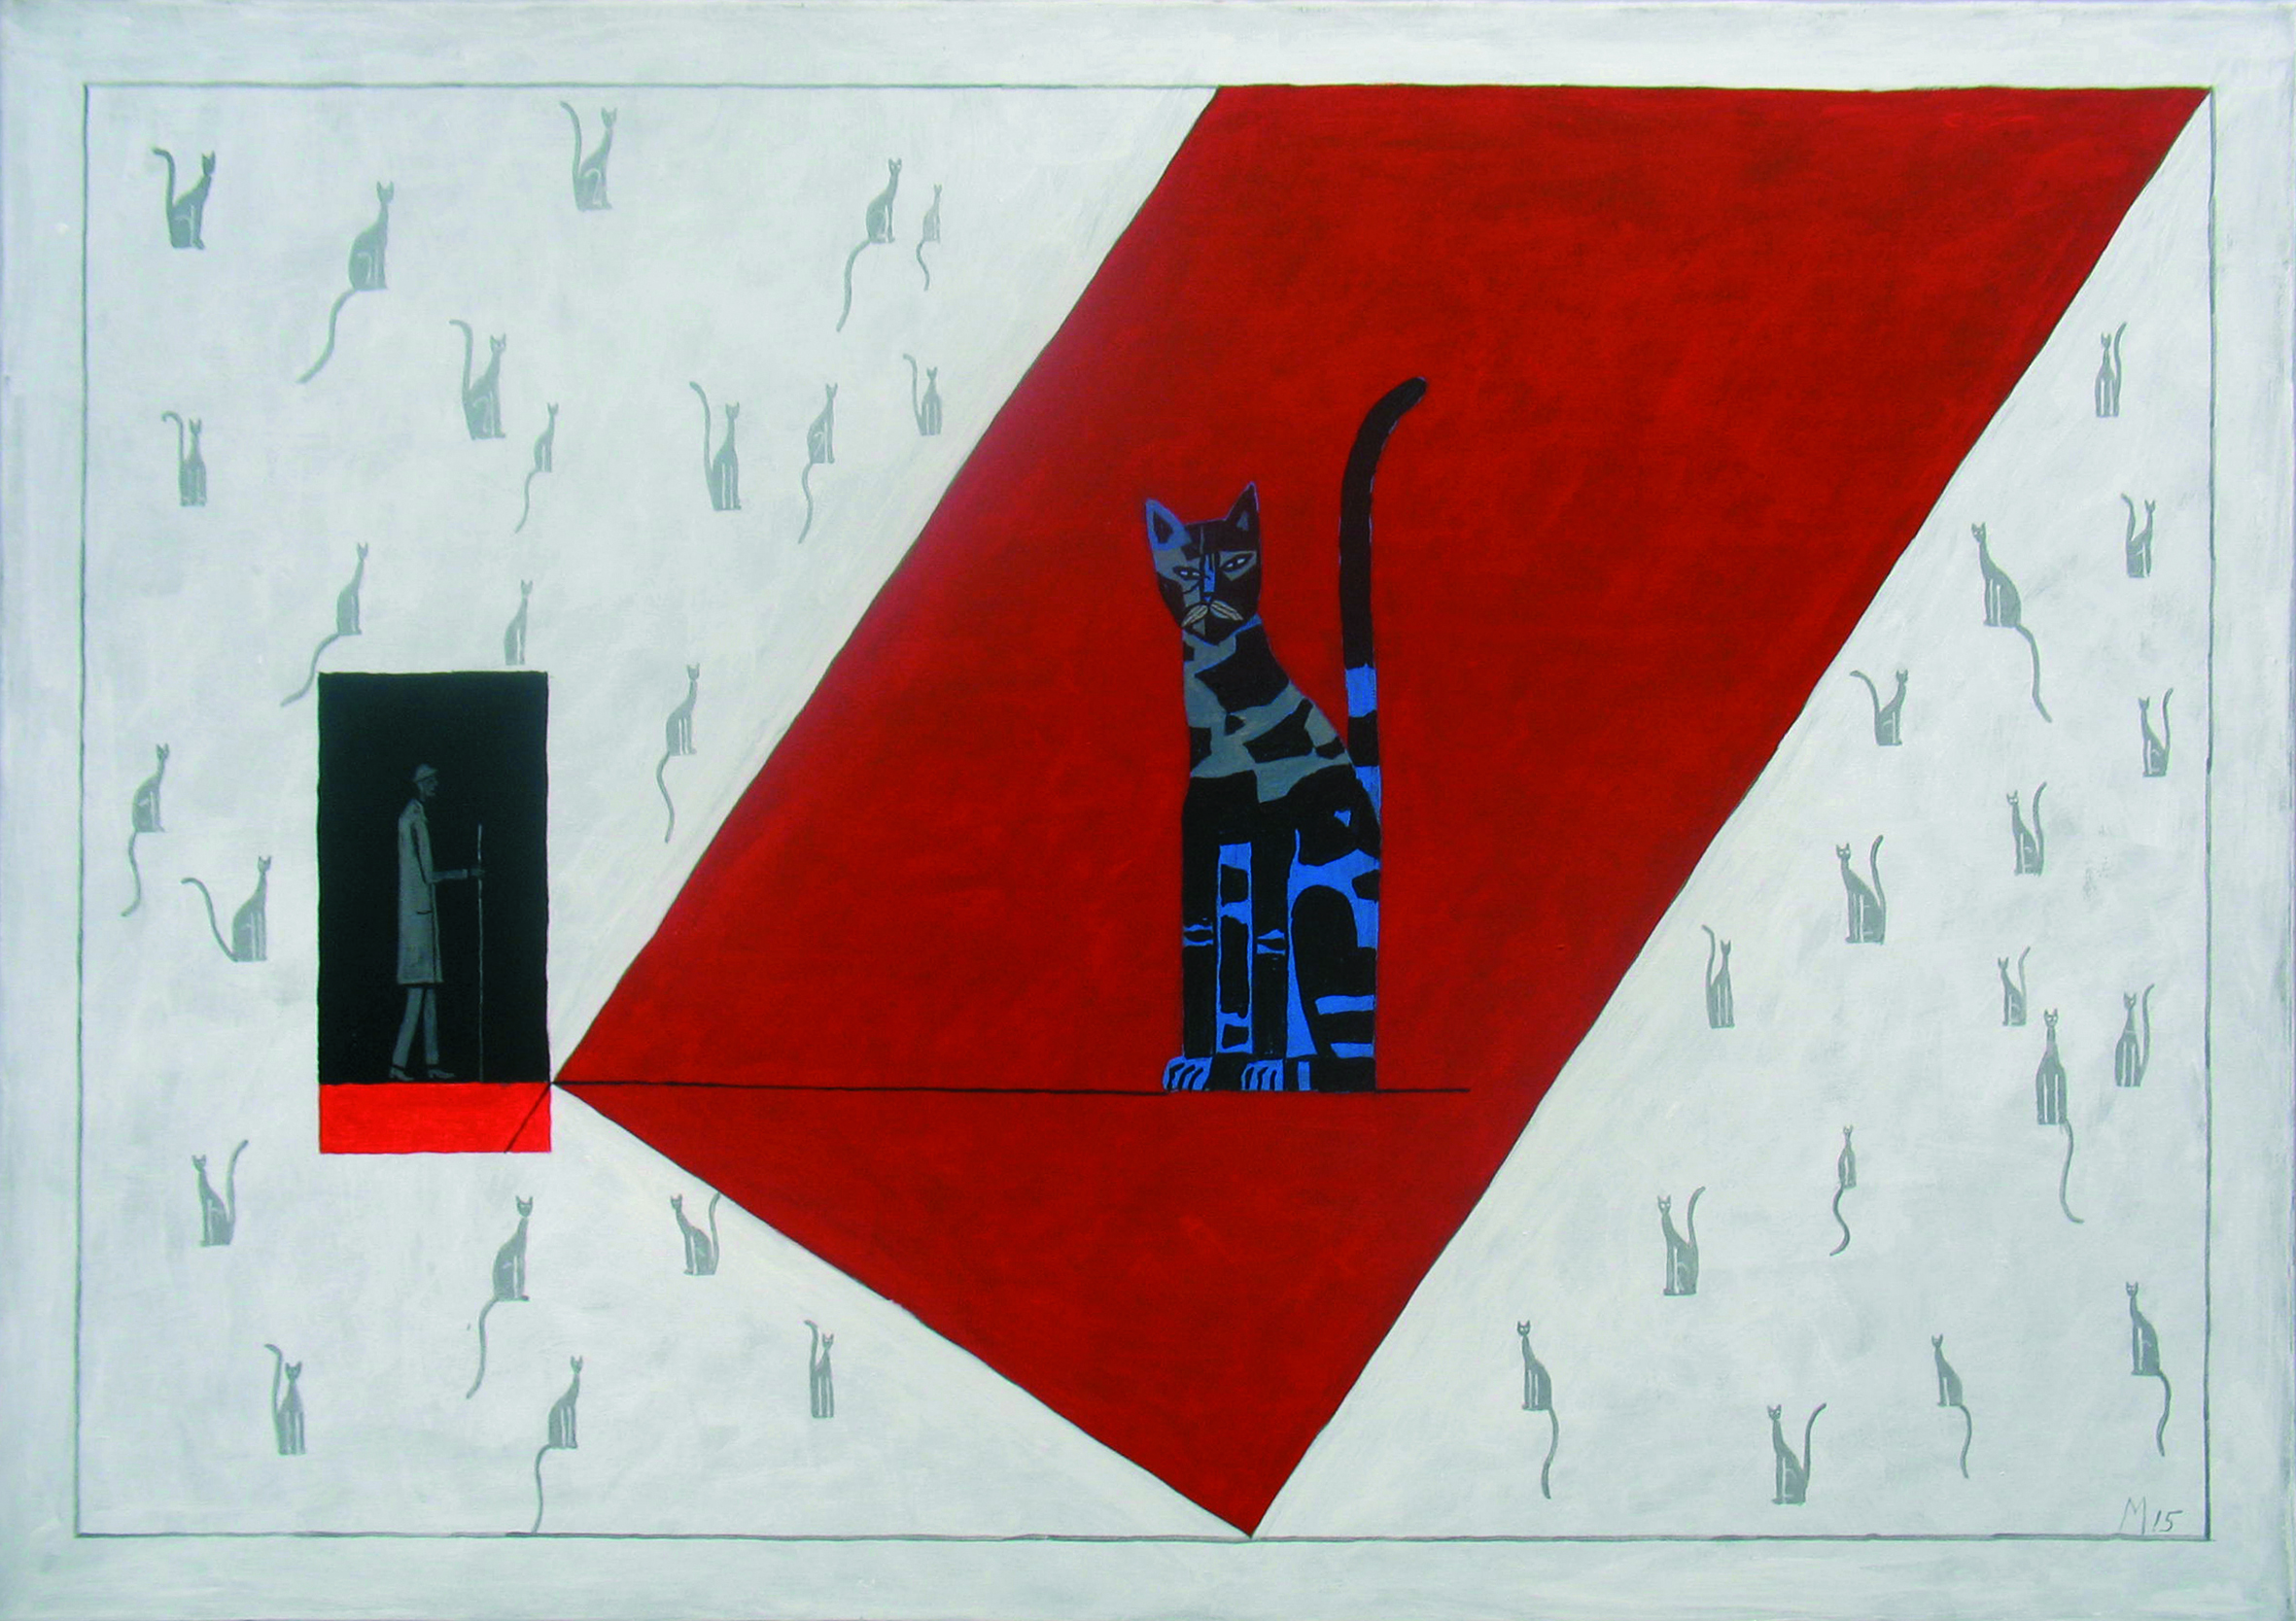 Obraz malarski ma tytuł "Świadek". Na obrazie w centrum jest kot. Kot jest w kolorach szary, niebieski, brązowy. Kot jest na czerwonym, ukośnym tle. Po lewej stronie jest prostokąt. Prostokąt jest szary i ma czerwony poziomy pas na dole. W prostokącie jest namalowany człowiek z laską. Człowiek idzie w kierunku kota. Kot jest kilkakrotnie większy niż człowiek. 